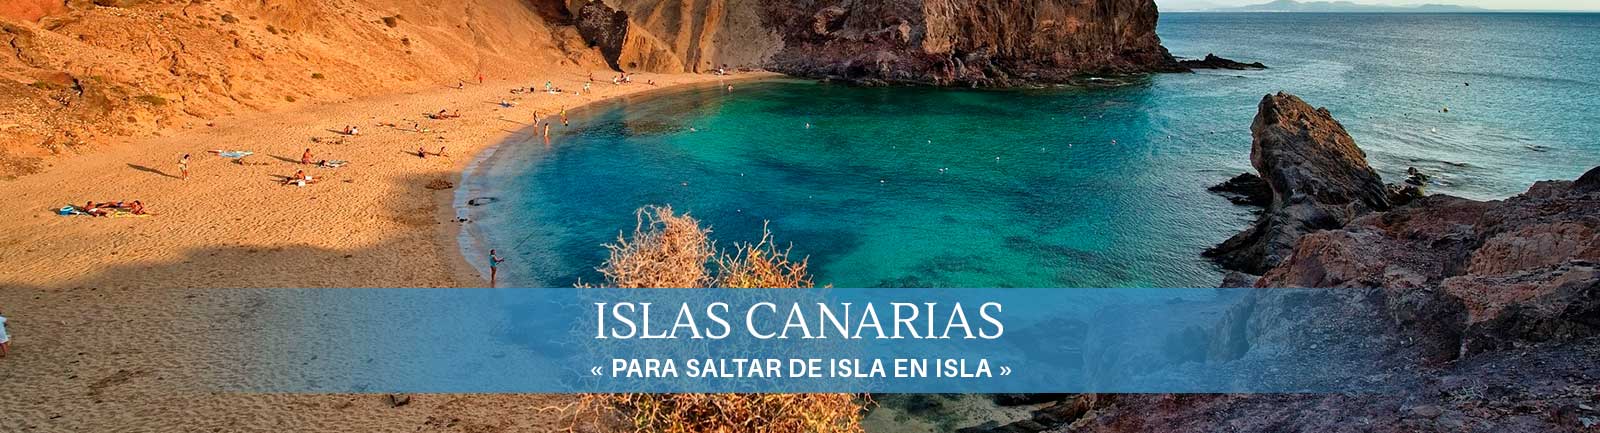 Destino Islas Canarias